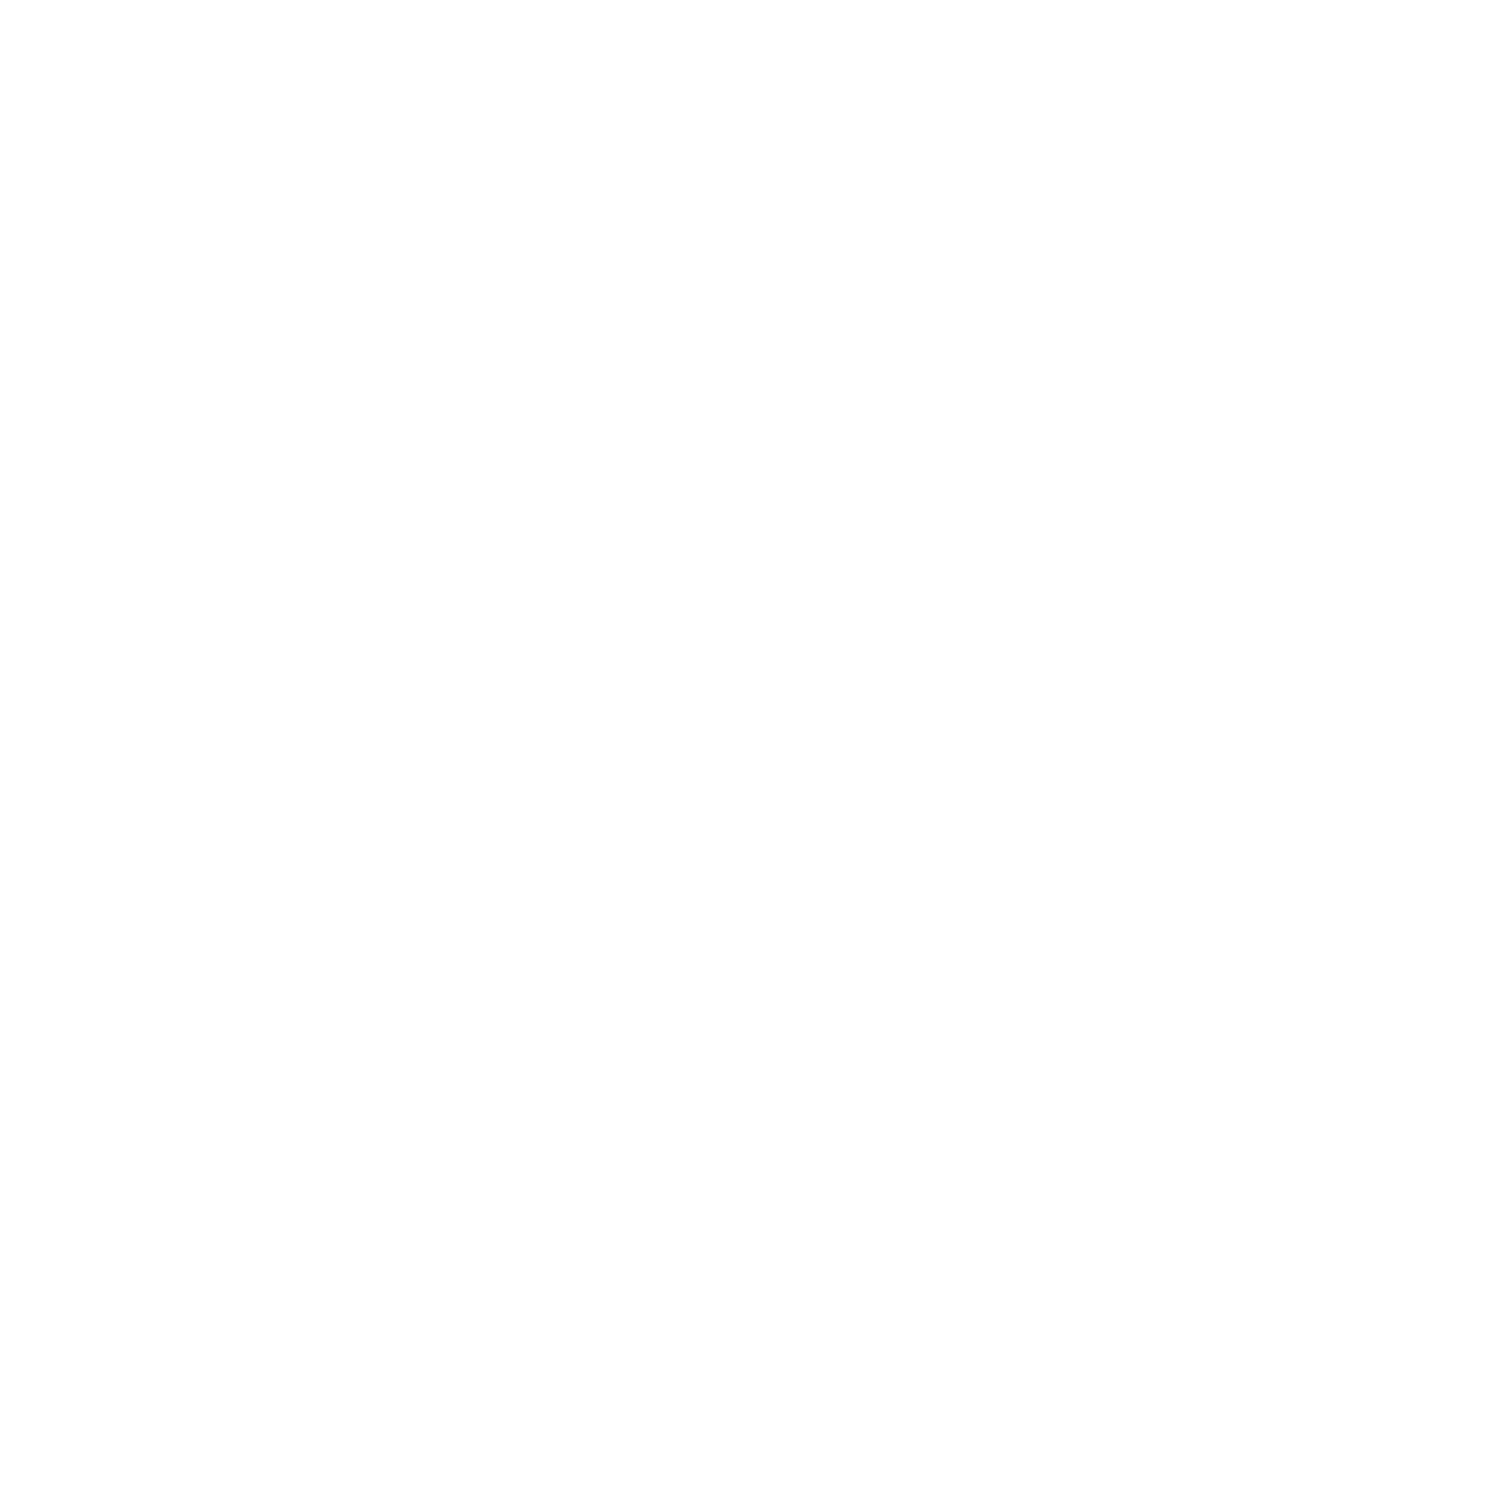 Restless Josie Cooks